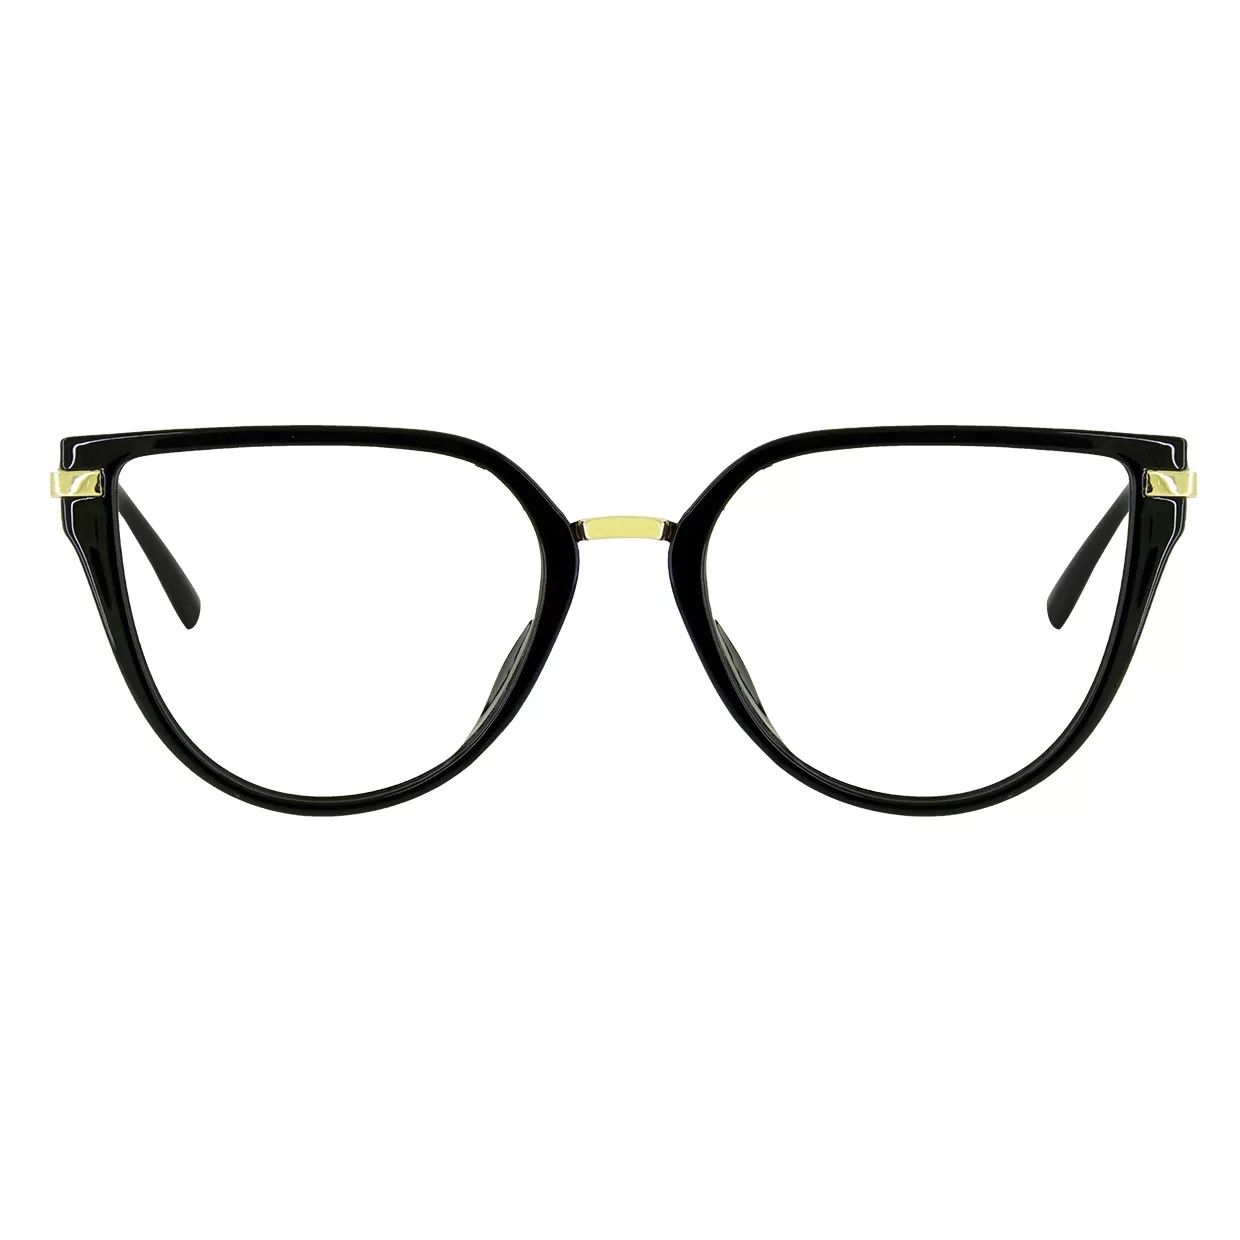 فریم عینک طبی گودلوک مدل 95318 -  - 1